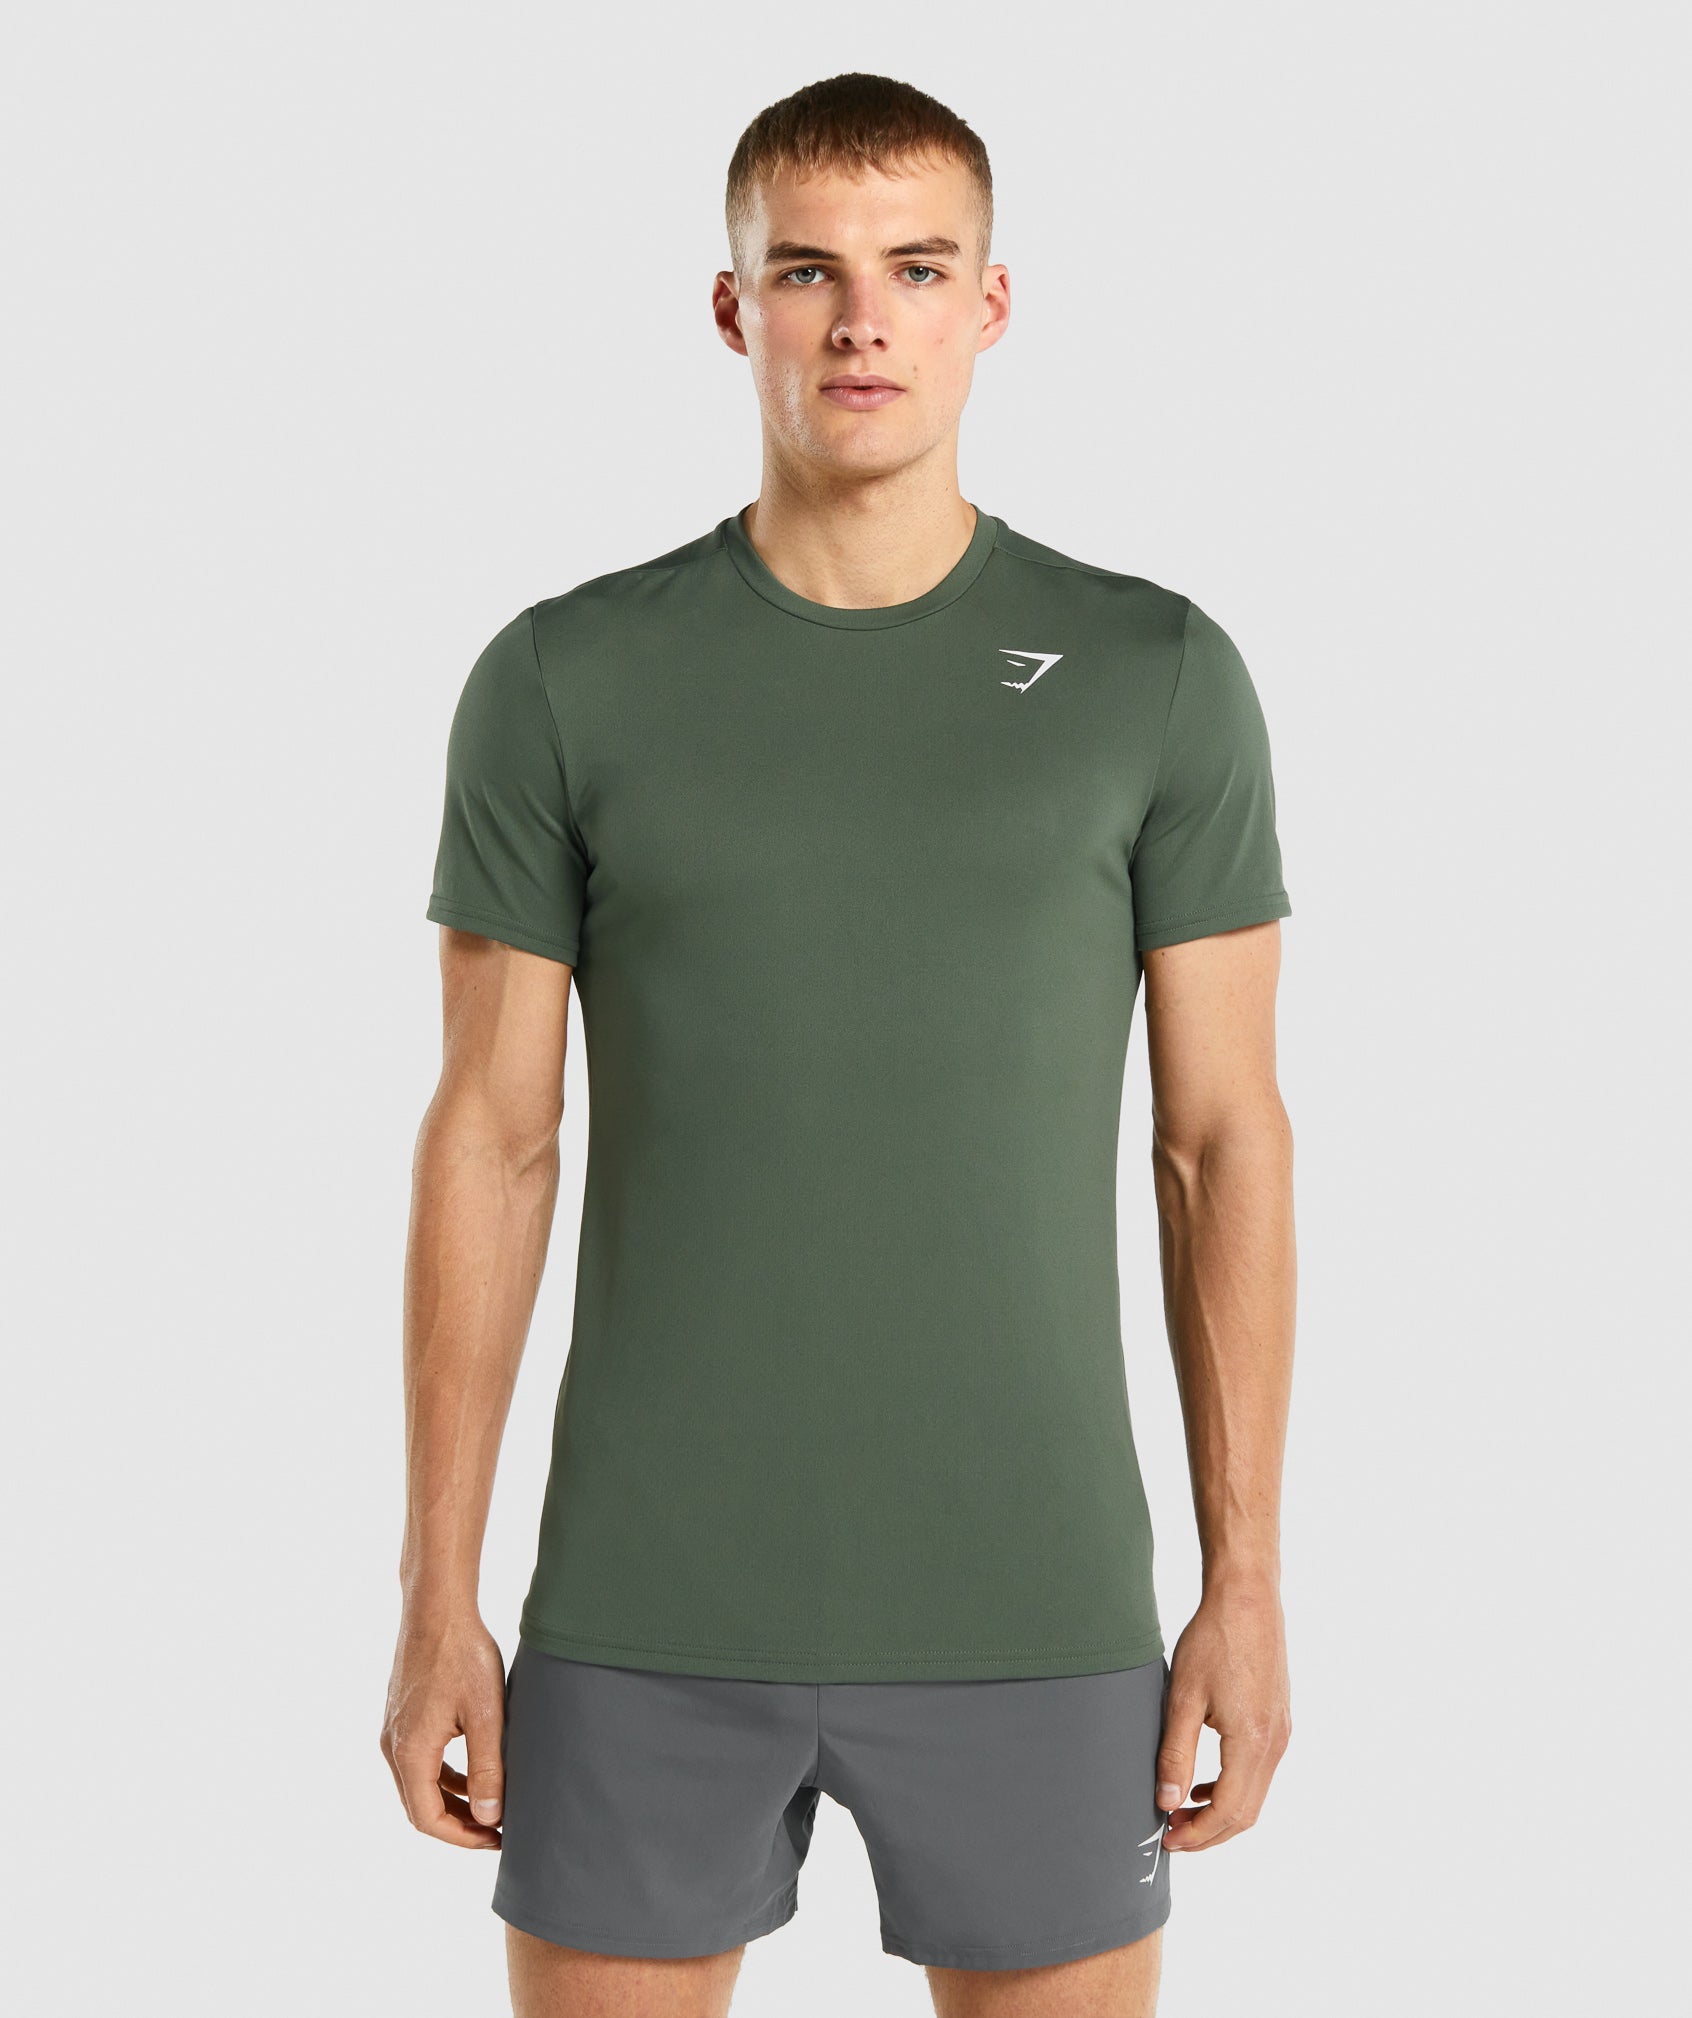 Gymshark Arrival T-Shirt - Green